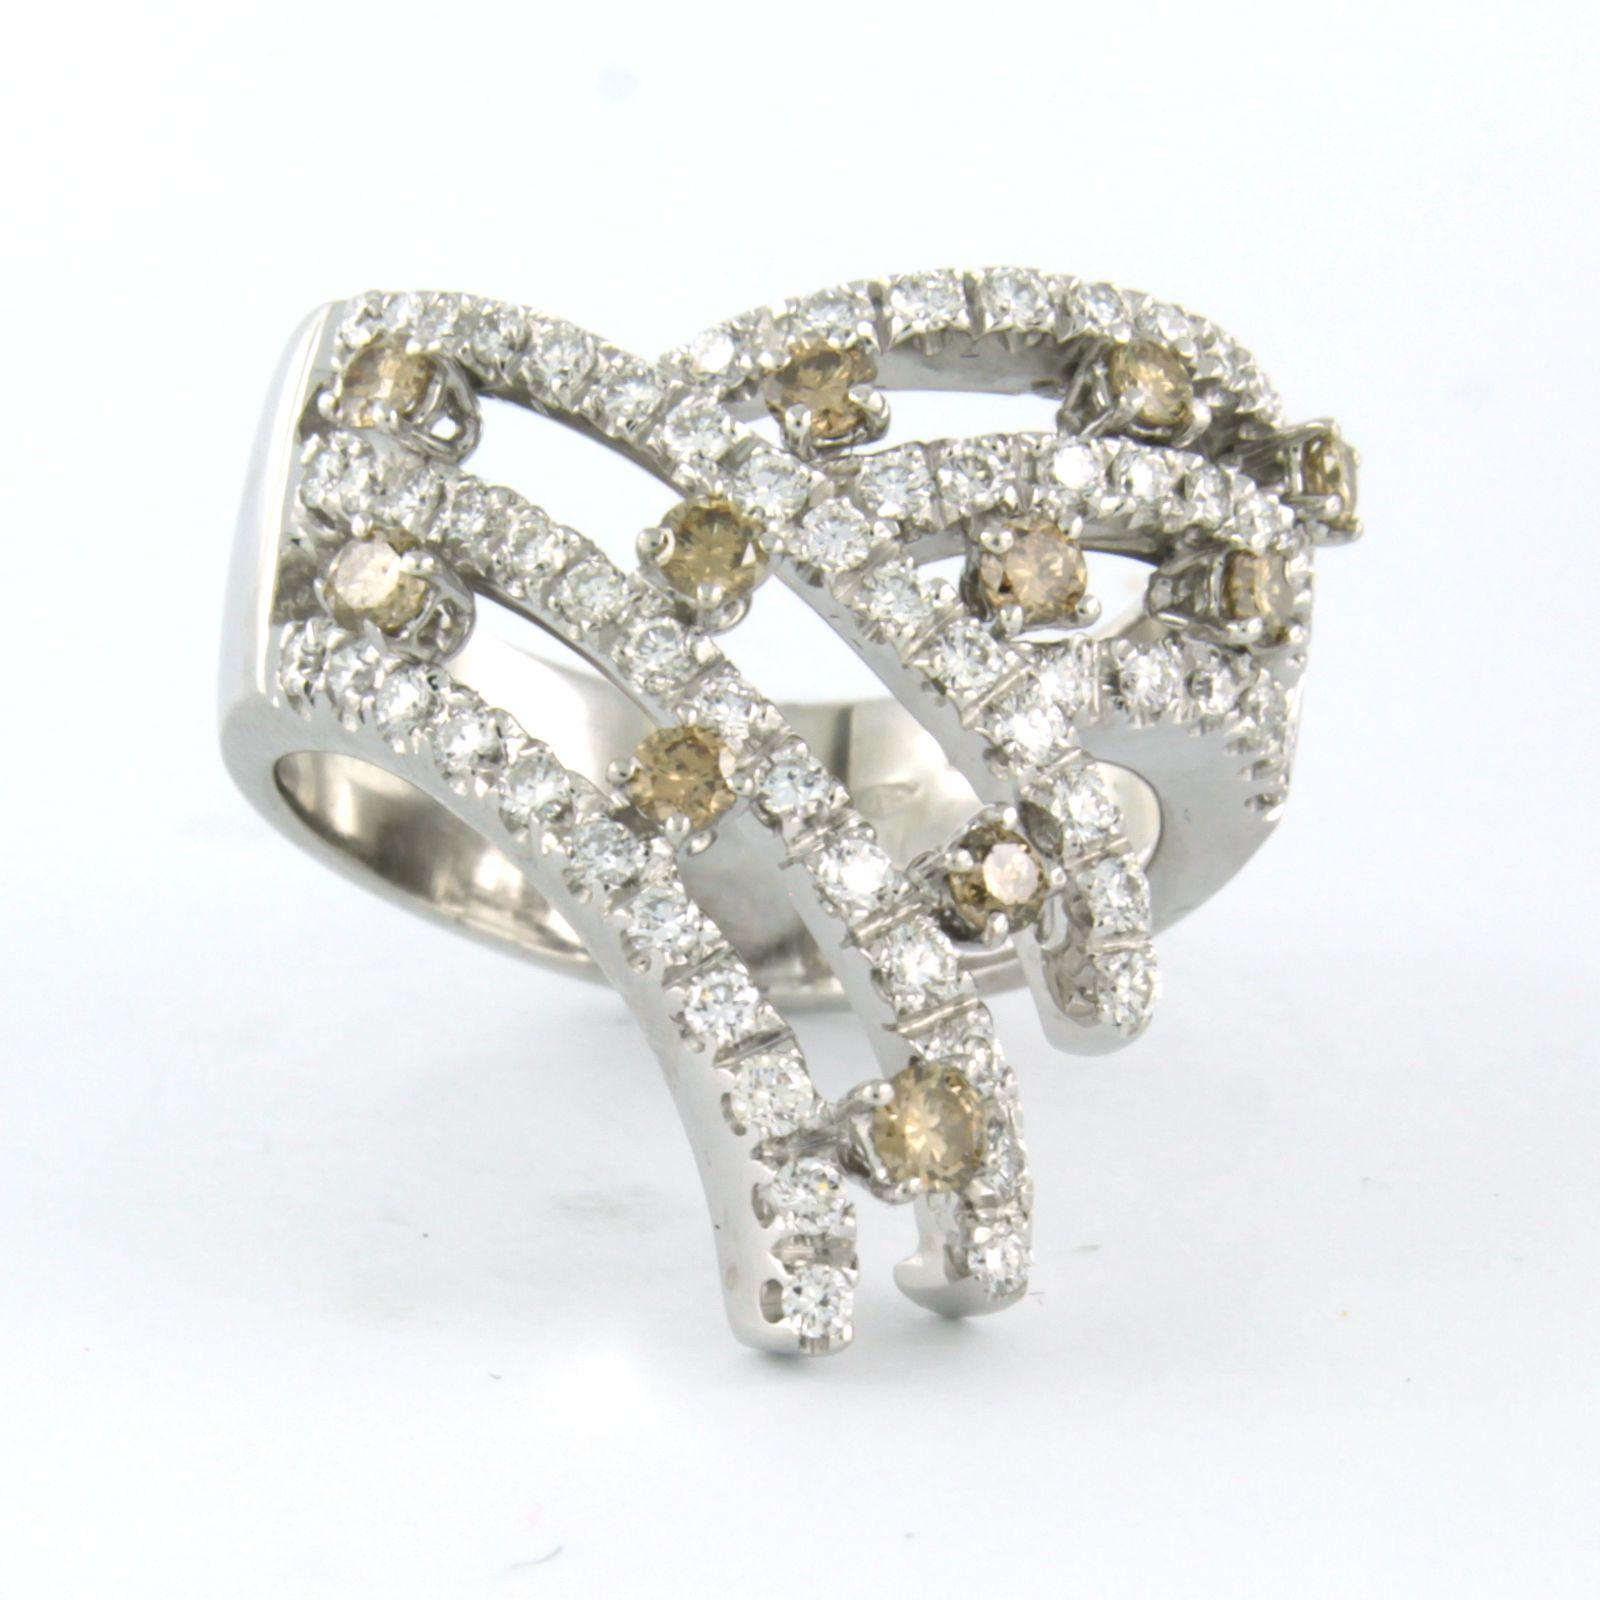 Ring aus 18 Karat Weißgold, besetzt mit braunen Diamanten im Brillantschliff, insgesamt ca. 0,46ct K/L - VS/SI und weißen Diamanten im Brillantschliff, insgesamt ca. 1,24ct - F/G - VS/SI - Ringgröße U.S. 9,5 - EU. 19.5 (61)

ausführliche